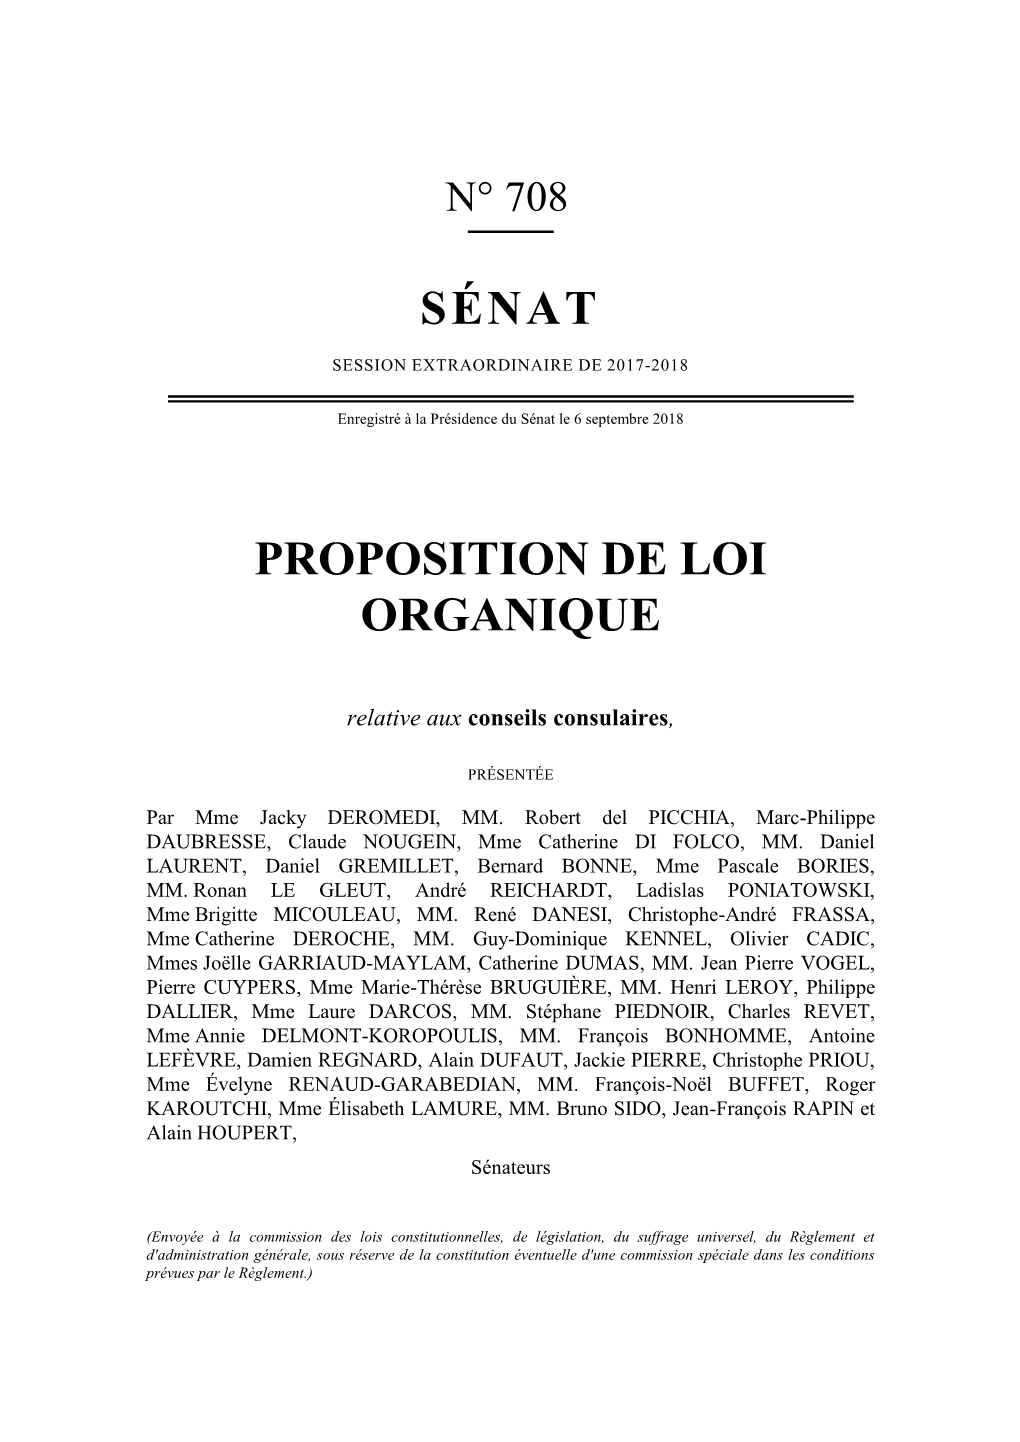 Texte De La Proposition De Loi Organique